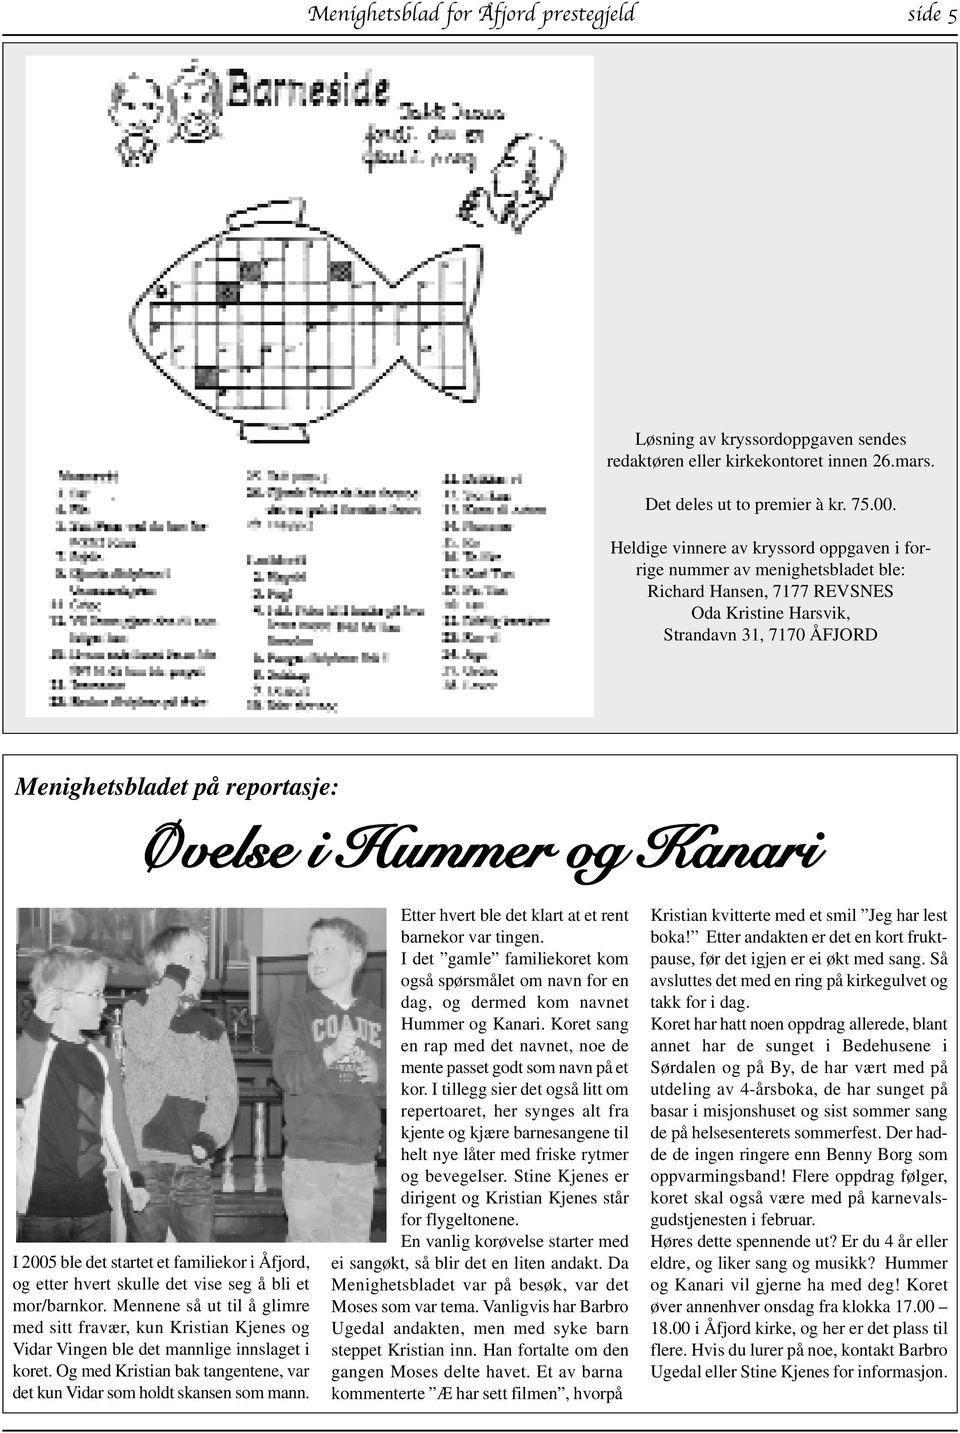 Hummer og Kanari I 2005 ble det startet et familiekor i Åfjord, og etter hvert skulle det vise seg å bli et mor/barnkor.